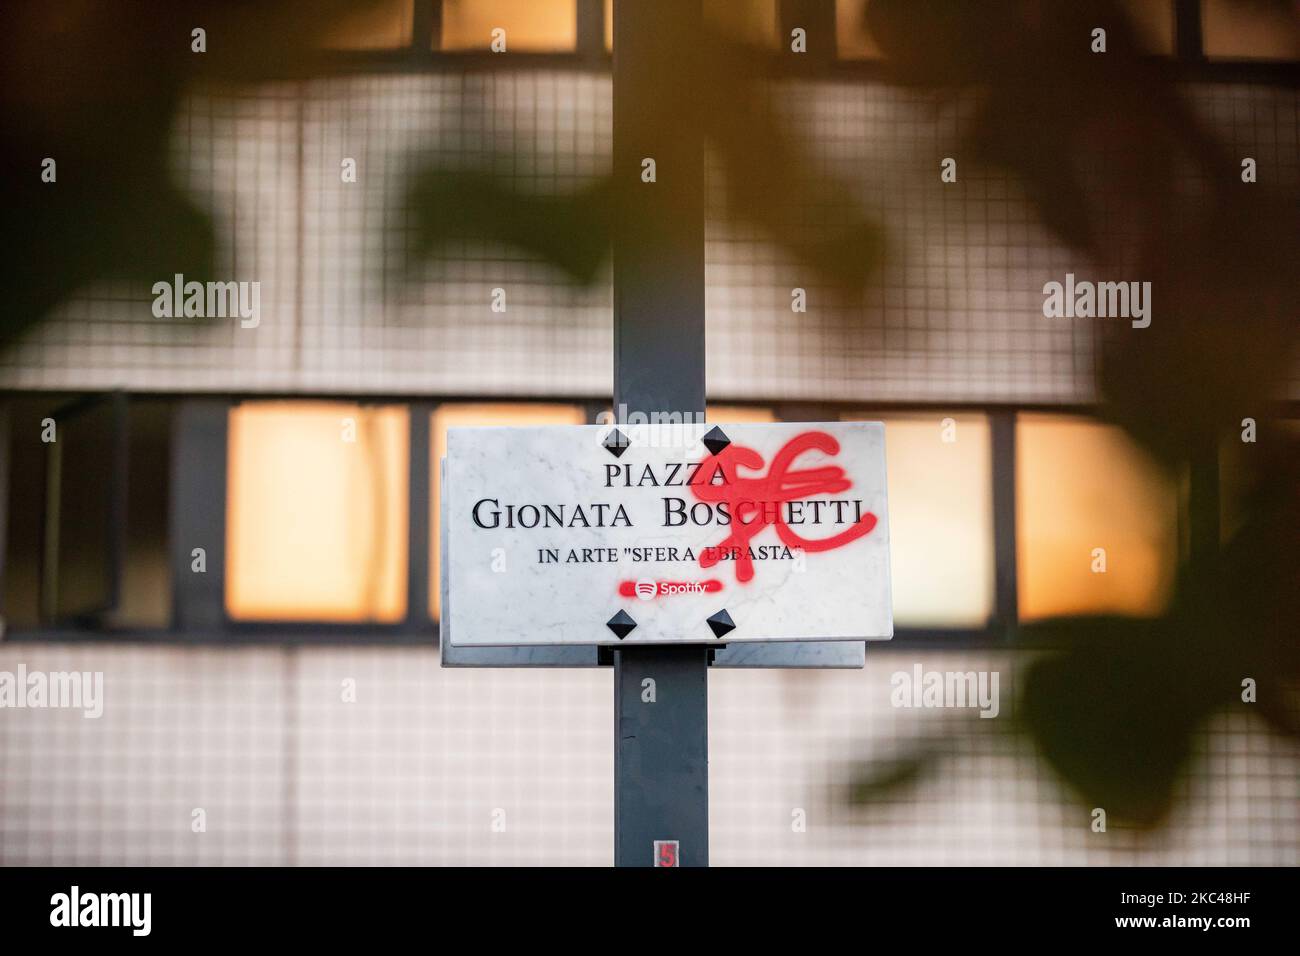 La nueva placa temporal para la Piazza Gionata Boschetti, conocida como Sfera Ebbaja, para celebrar el lanzamiento de su nuevo álbum Famoso en su ciudad natal el 19 de noviembre de 2020 en Cinisello Balsamo, Italia (Foto de Alessandro Bremec/NurPhoto) Foto de stock